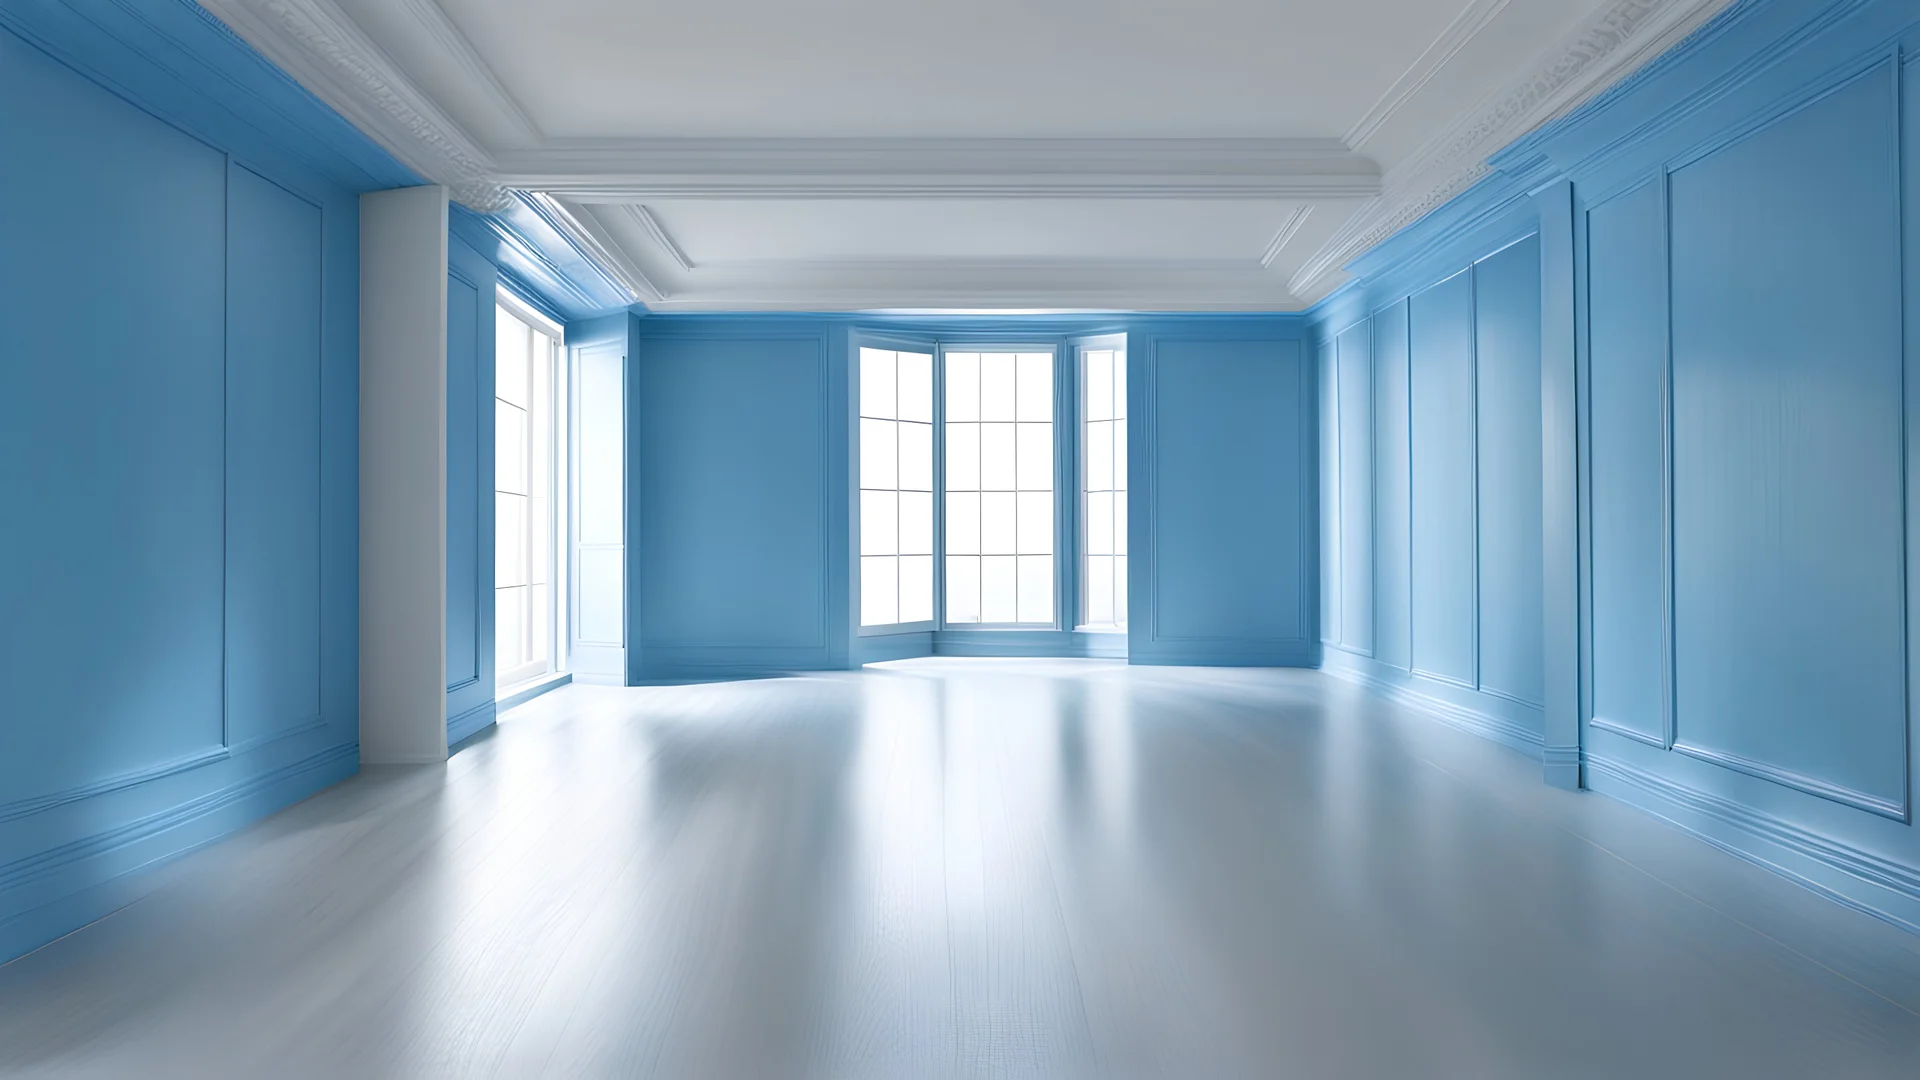 Blue empty indoor room view